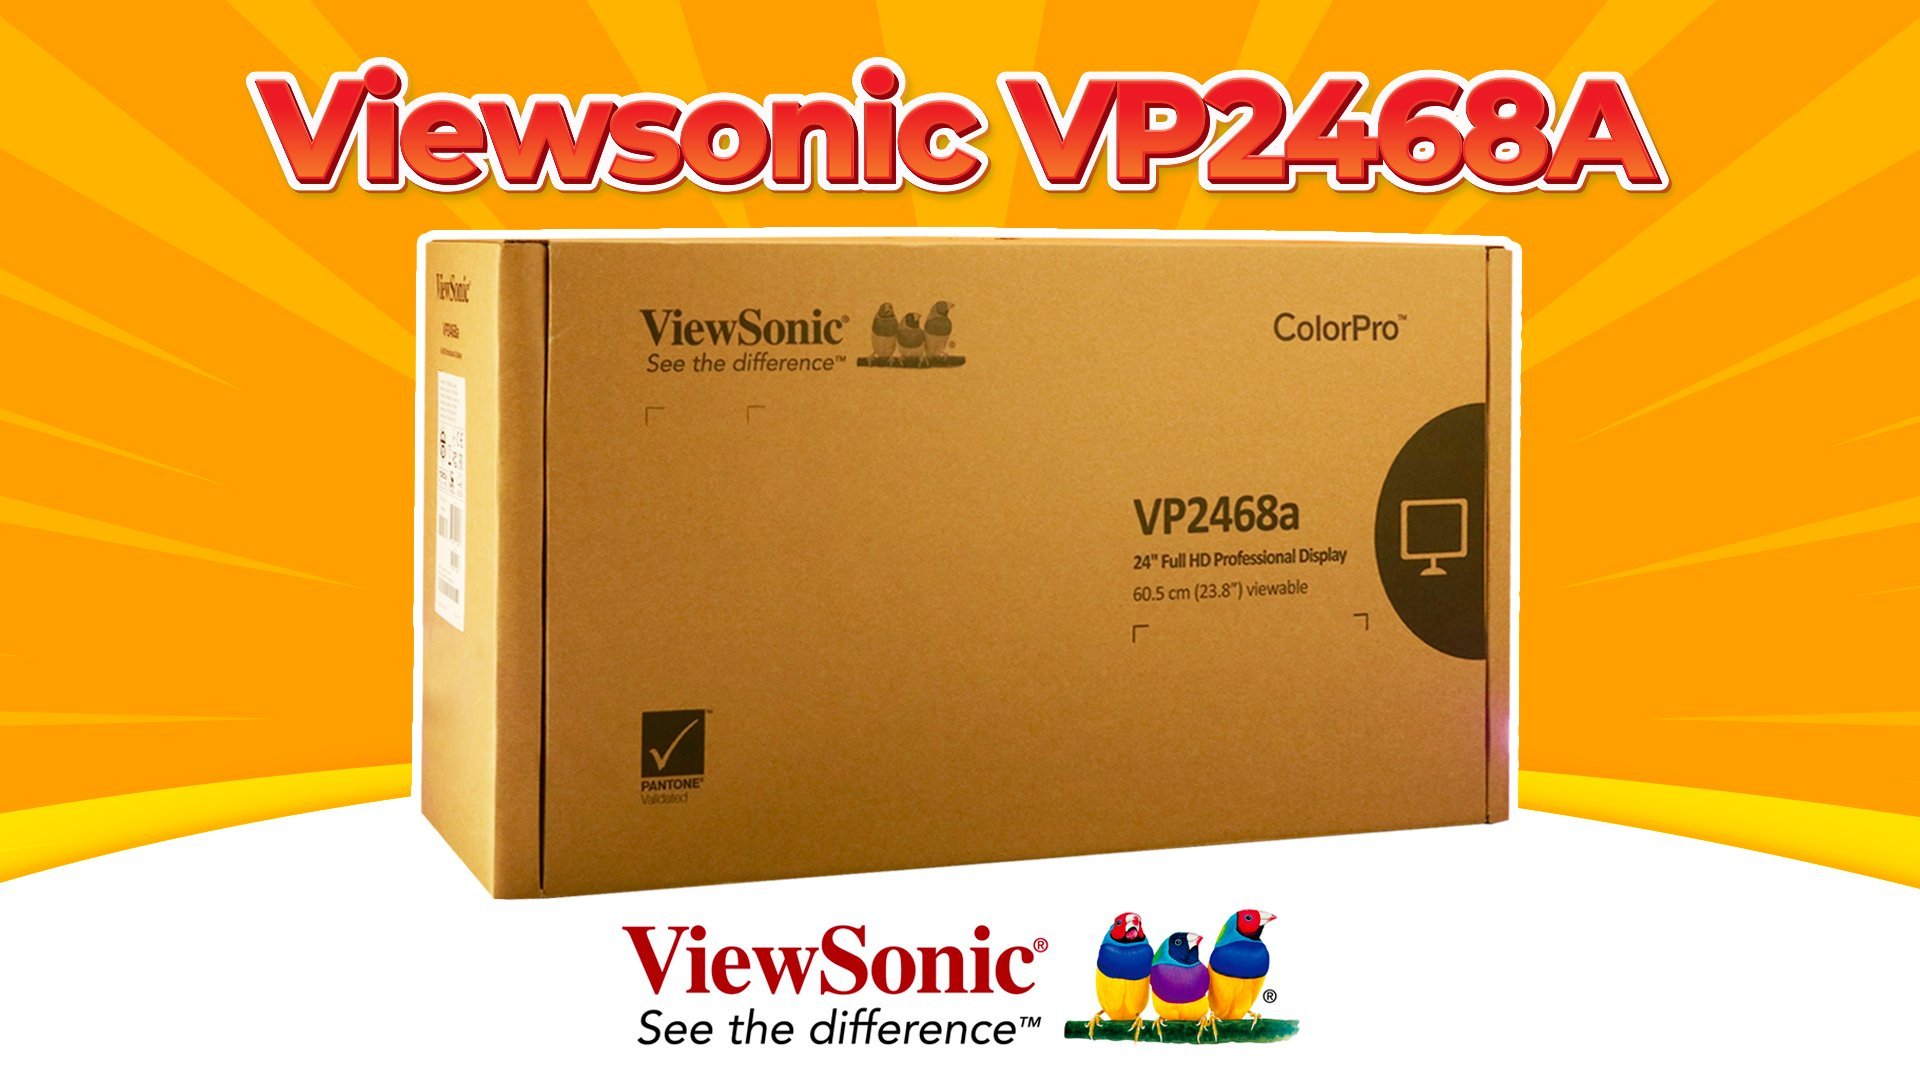 Màn Hình ViewSonic VP2468A - SỰ LỰA CHỌN HOÀN HẢO CỦA CÁC DESIGNER | Đập hộp cùng BLPC #2